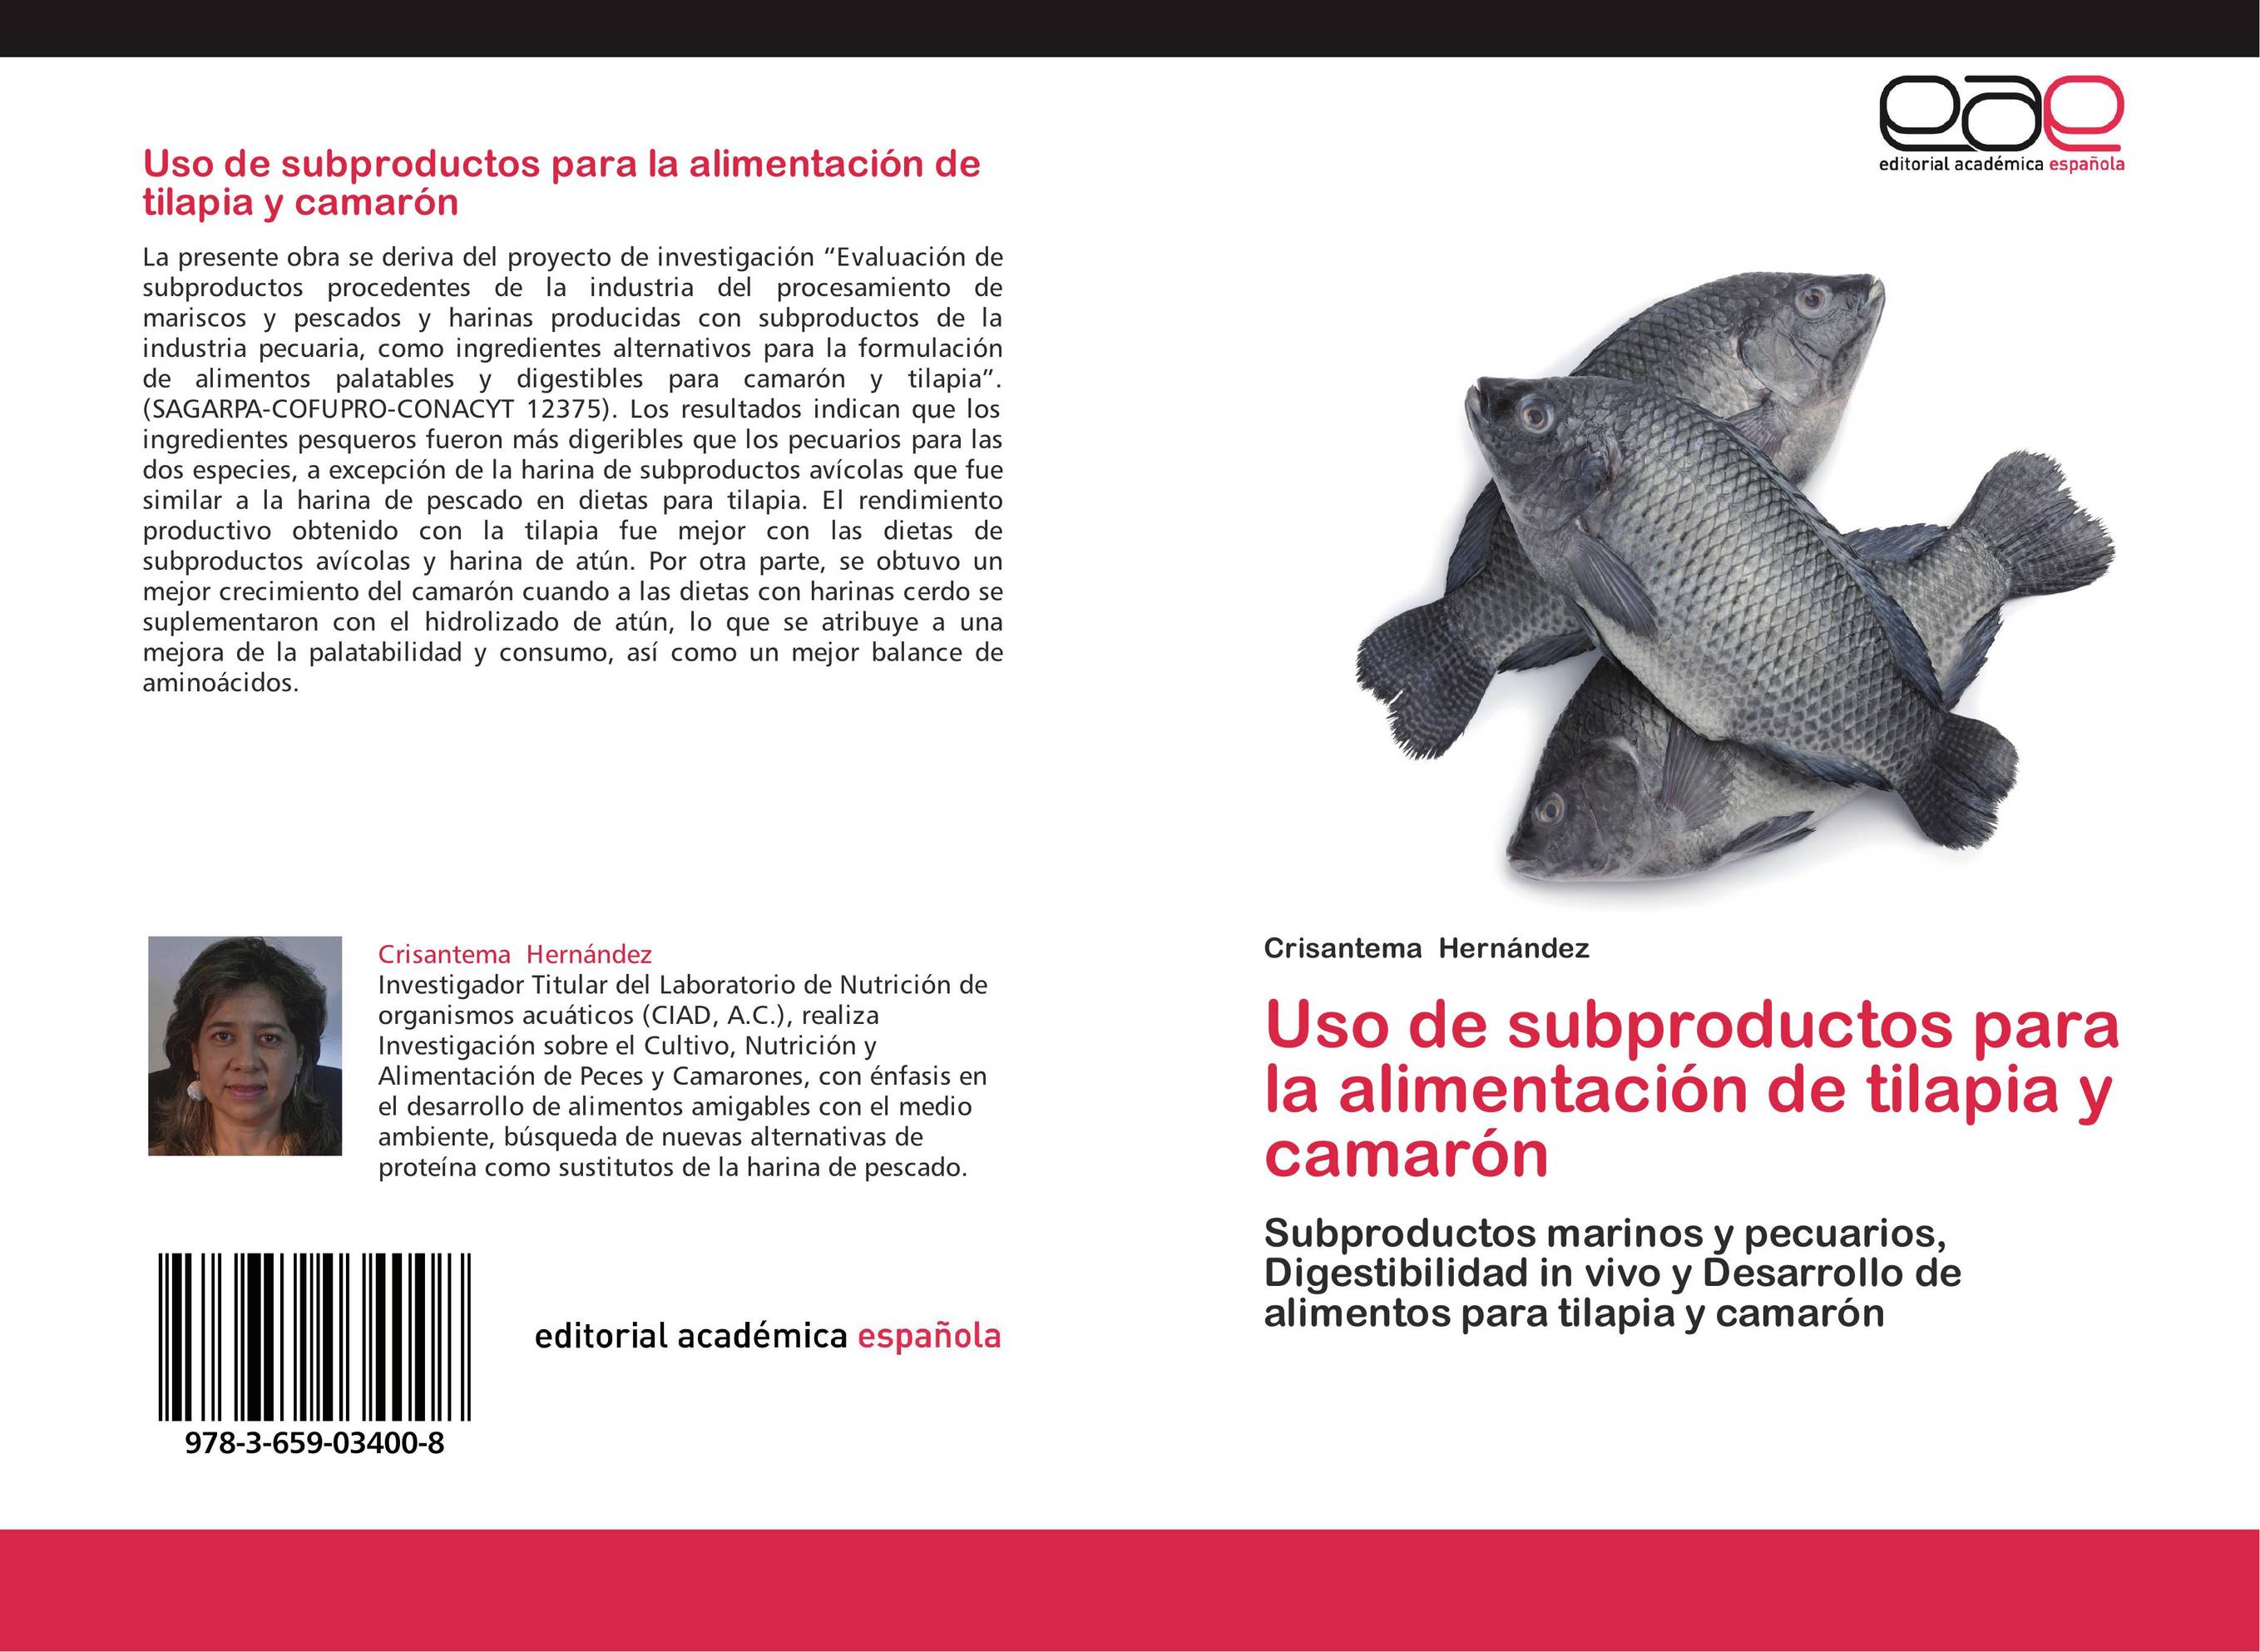 Uso de subproductos para la alimentación de tilapia y camarón